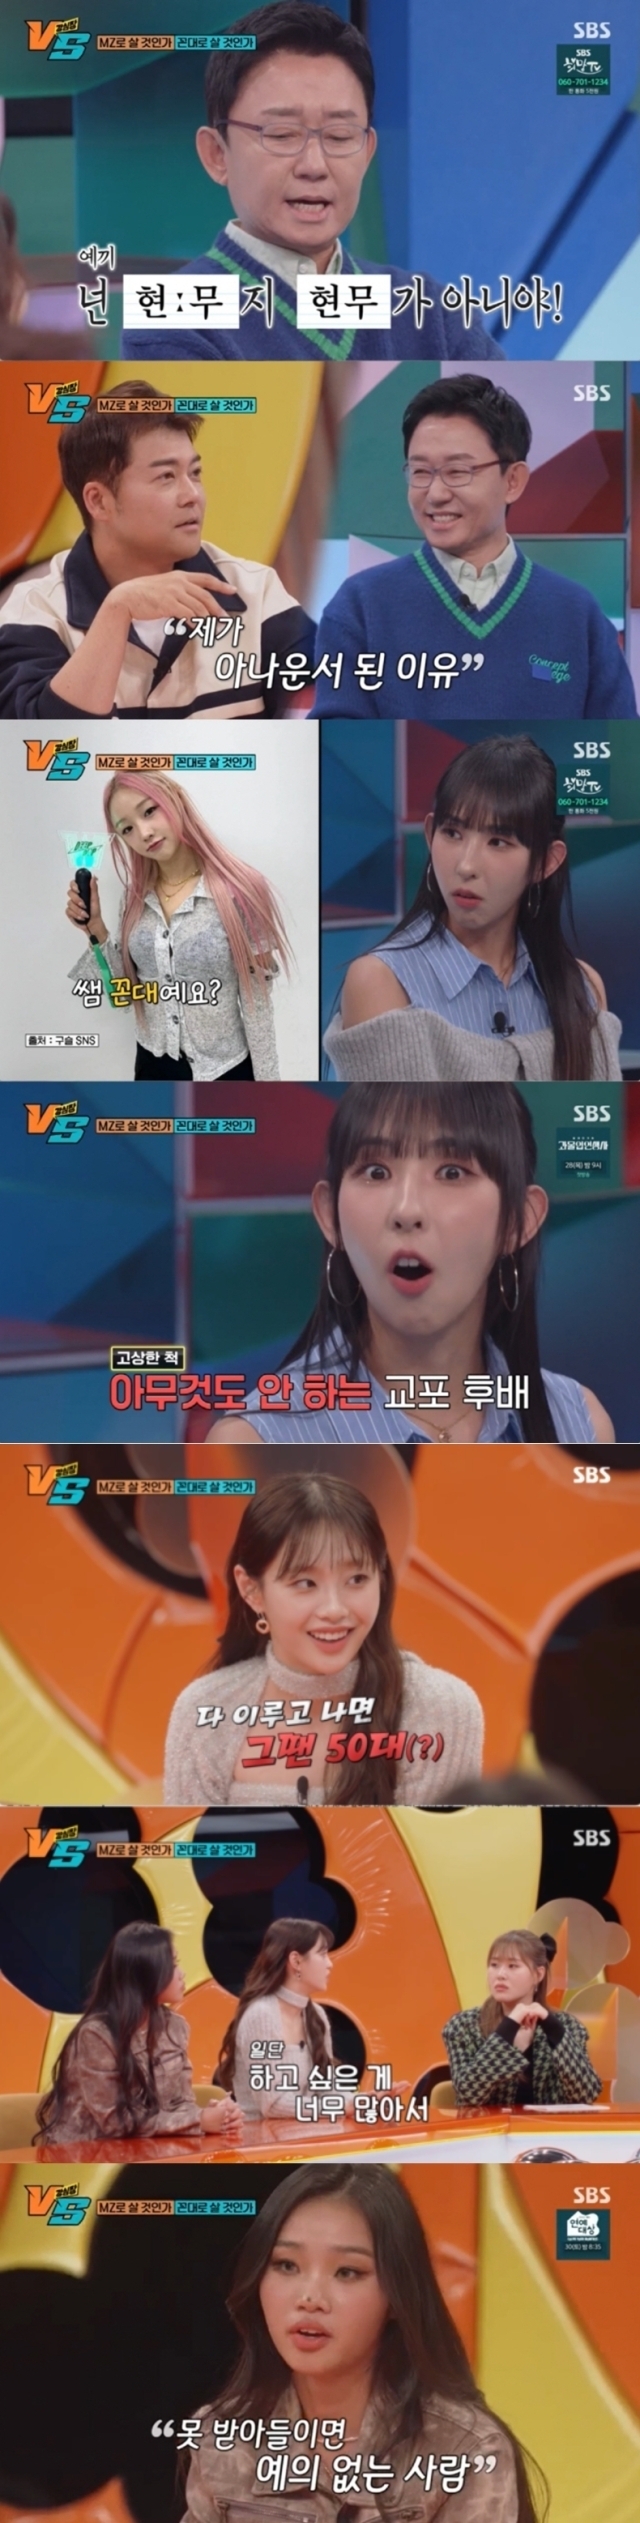 '강심장VS' / SBS 방송화면 캡처